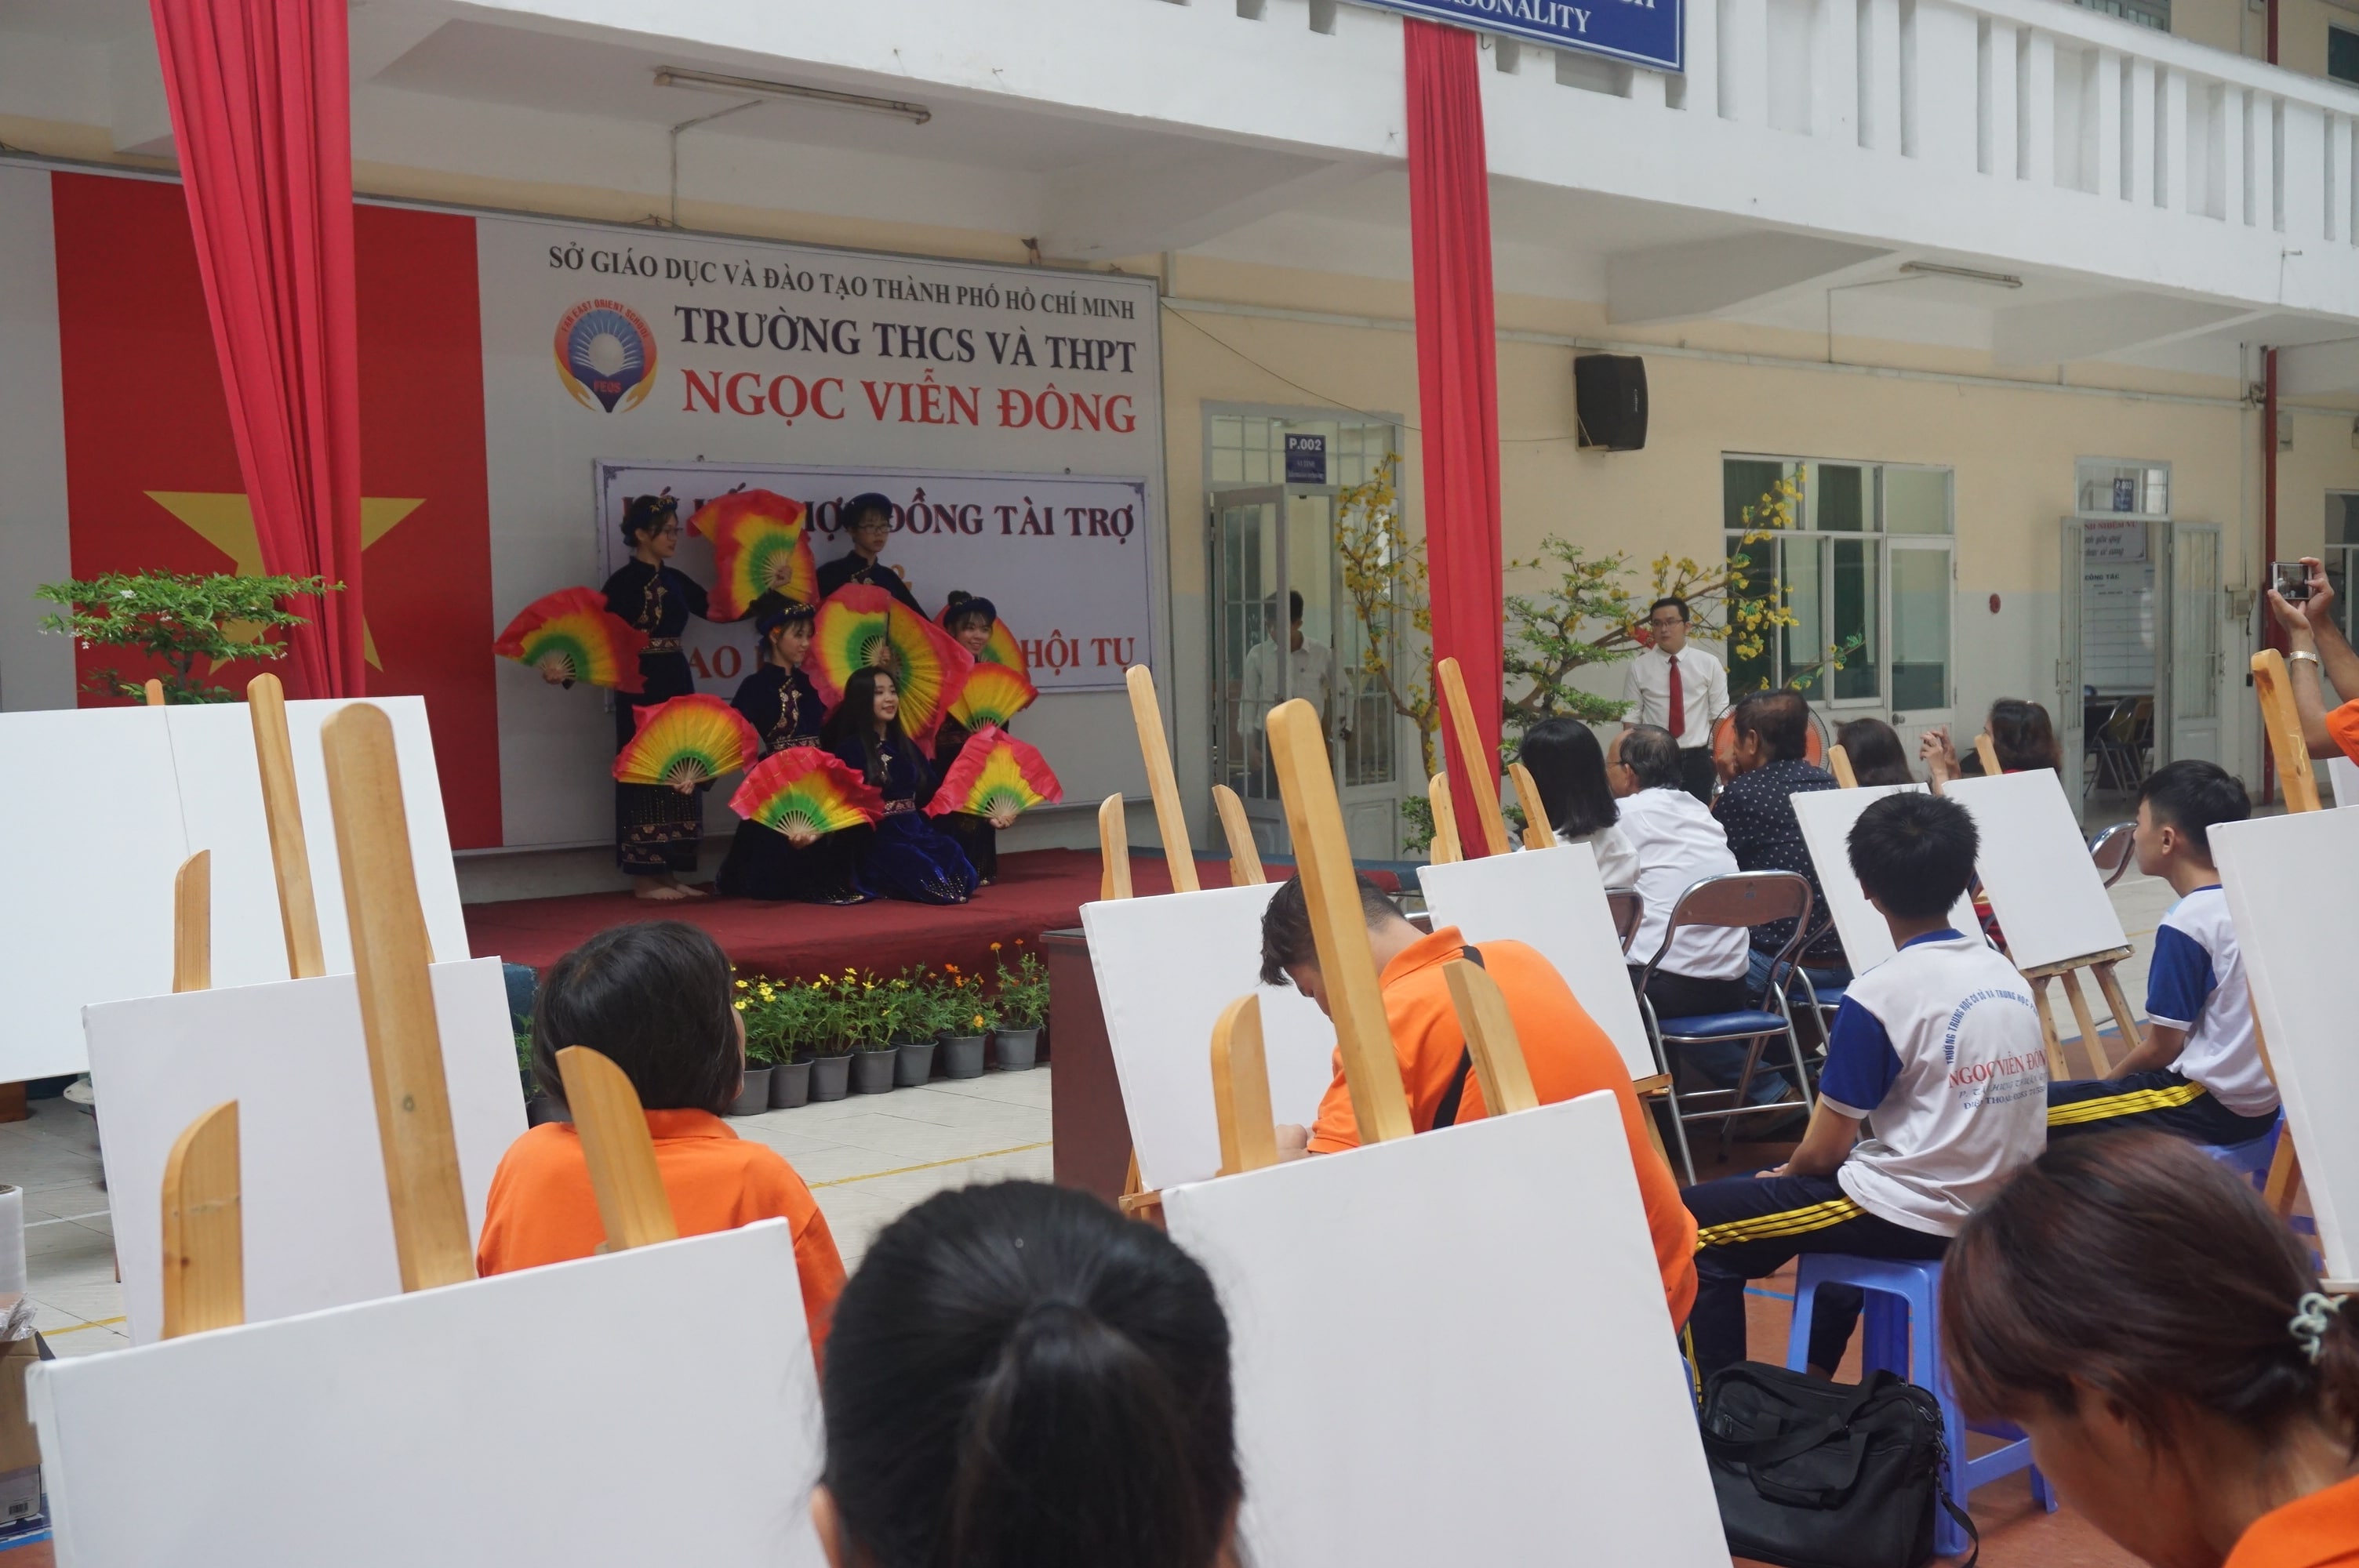 Giao lưu sắc màu hội tụ giữa CLB mỹ thuật trường Ngọc Viễn Đông và nhóm âm thanh hội họa Mekong Art